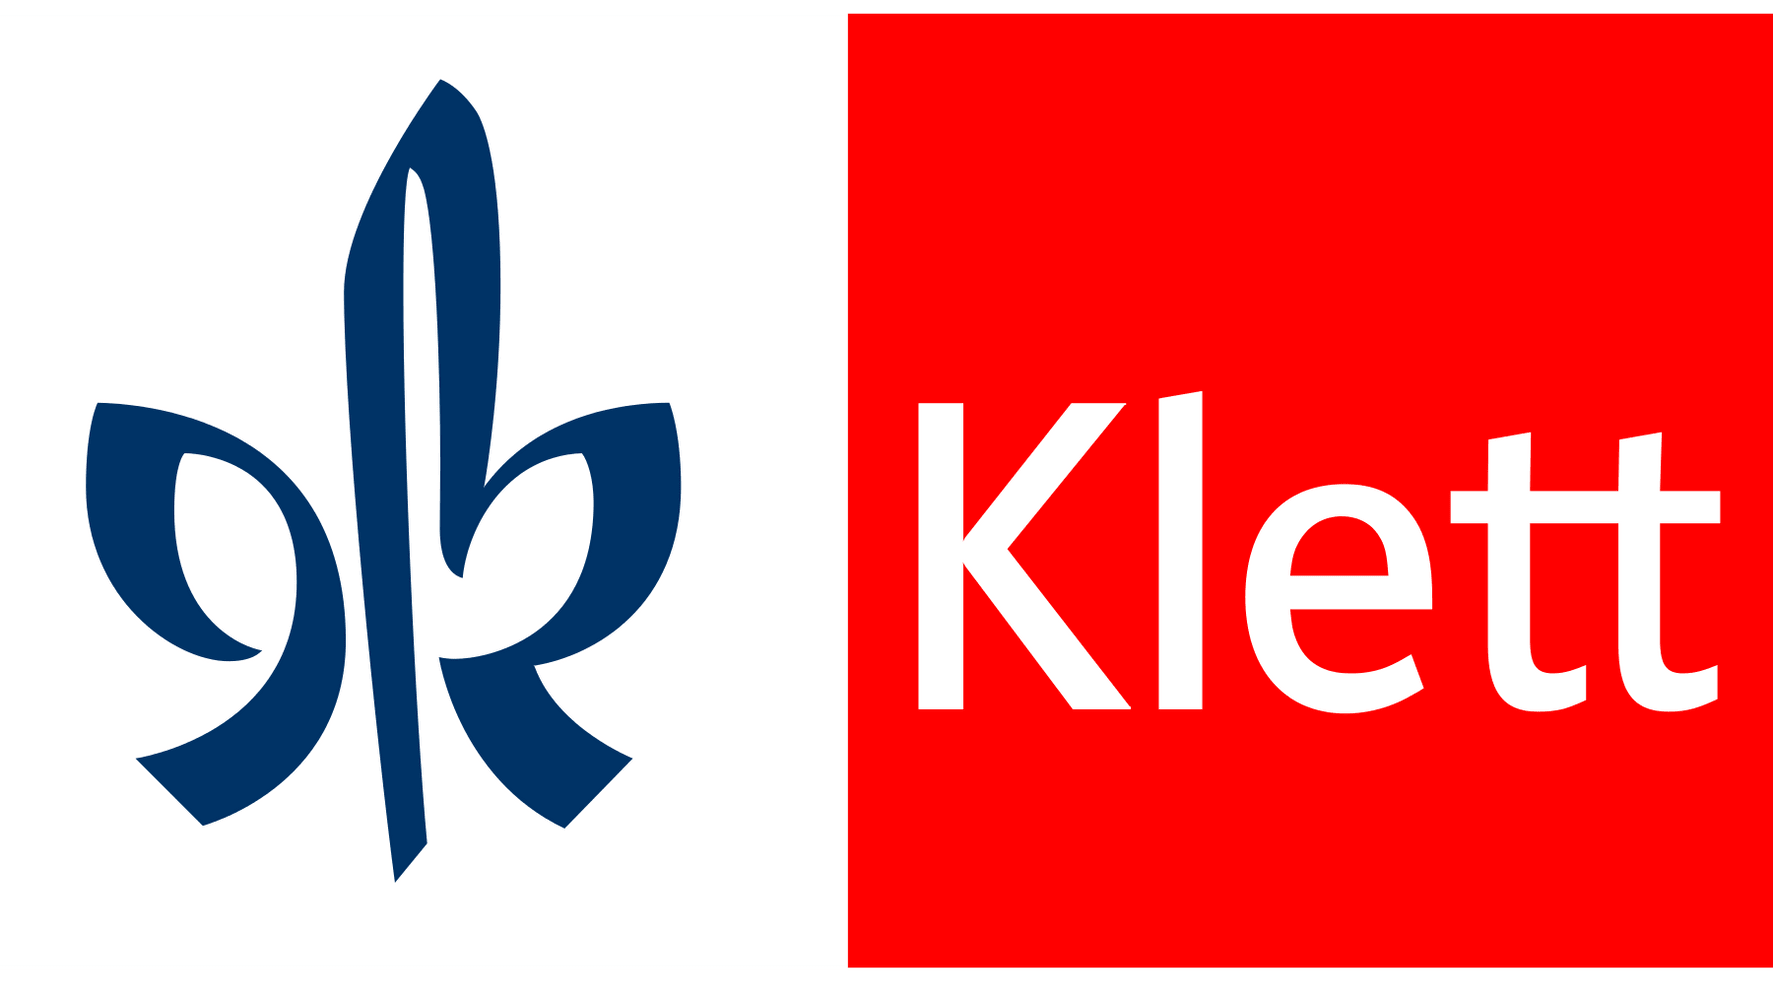 Klett Logo